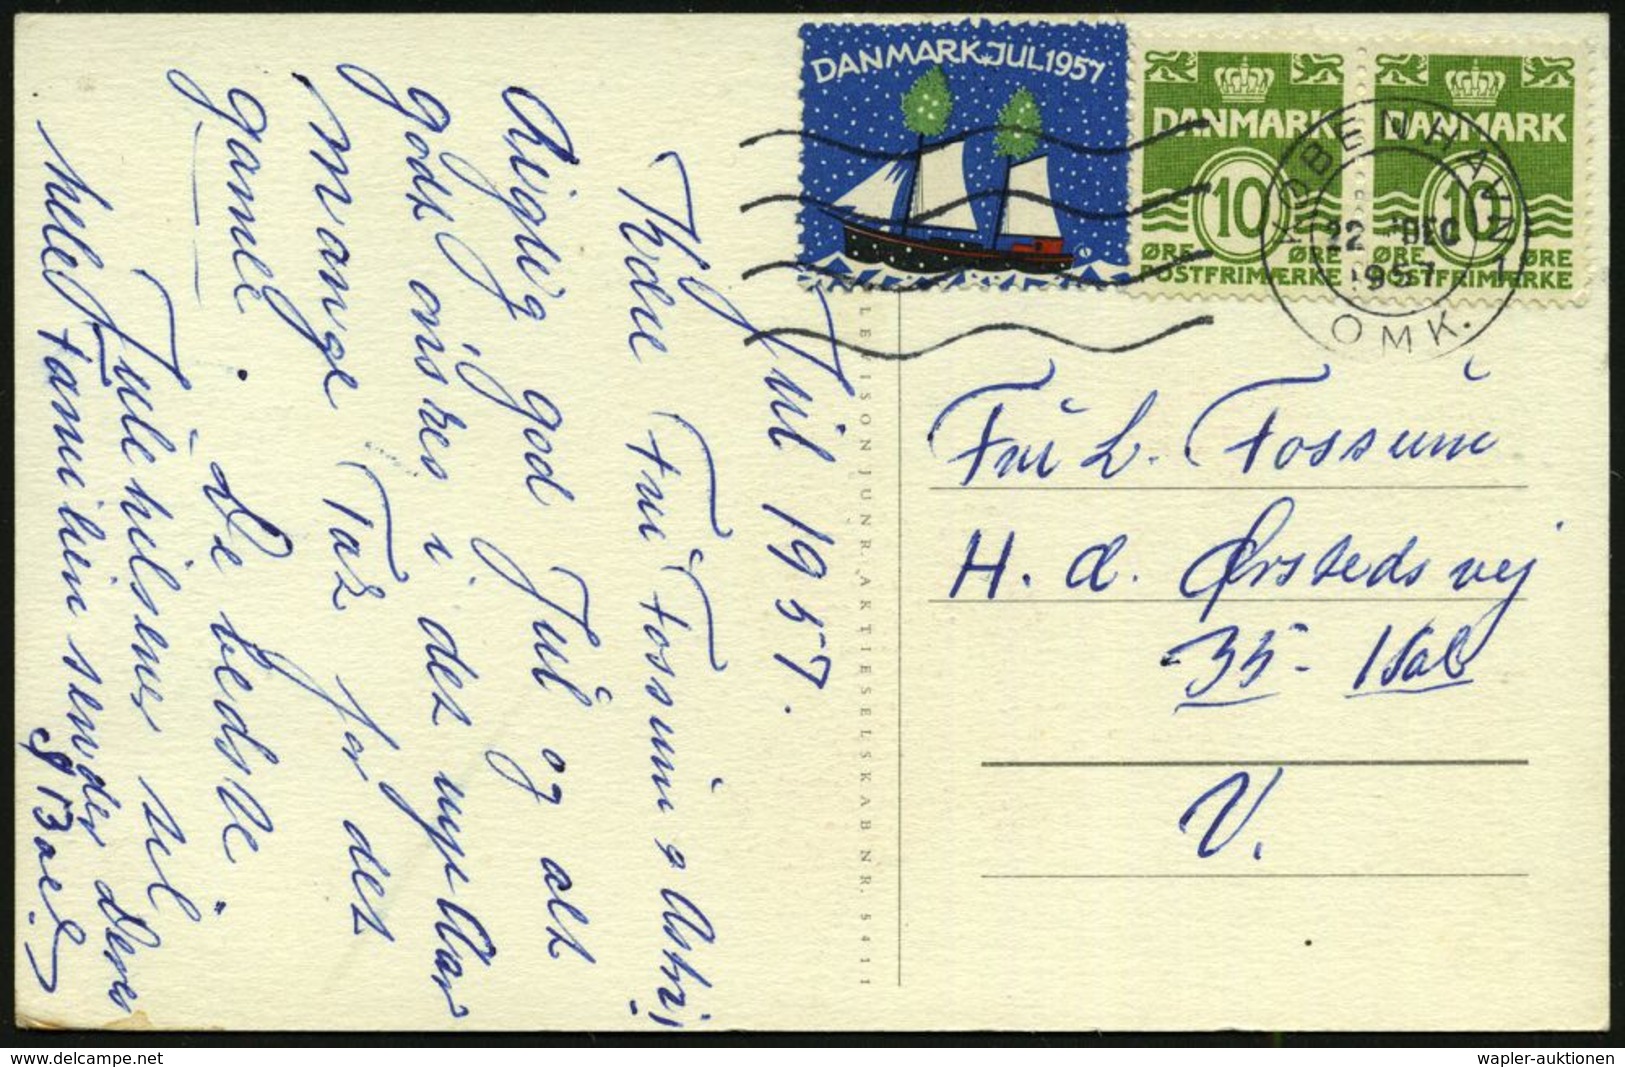 TUBERKULOSE / TBC-VORSORGE : DÄNEMARK 1957 (22.12.) 10 Öre Freimarke, Paar + Weihnachts-Tbc-Spendenmarke (Segelschiff) A - Krankheiten